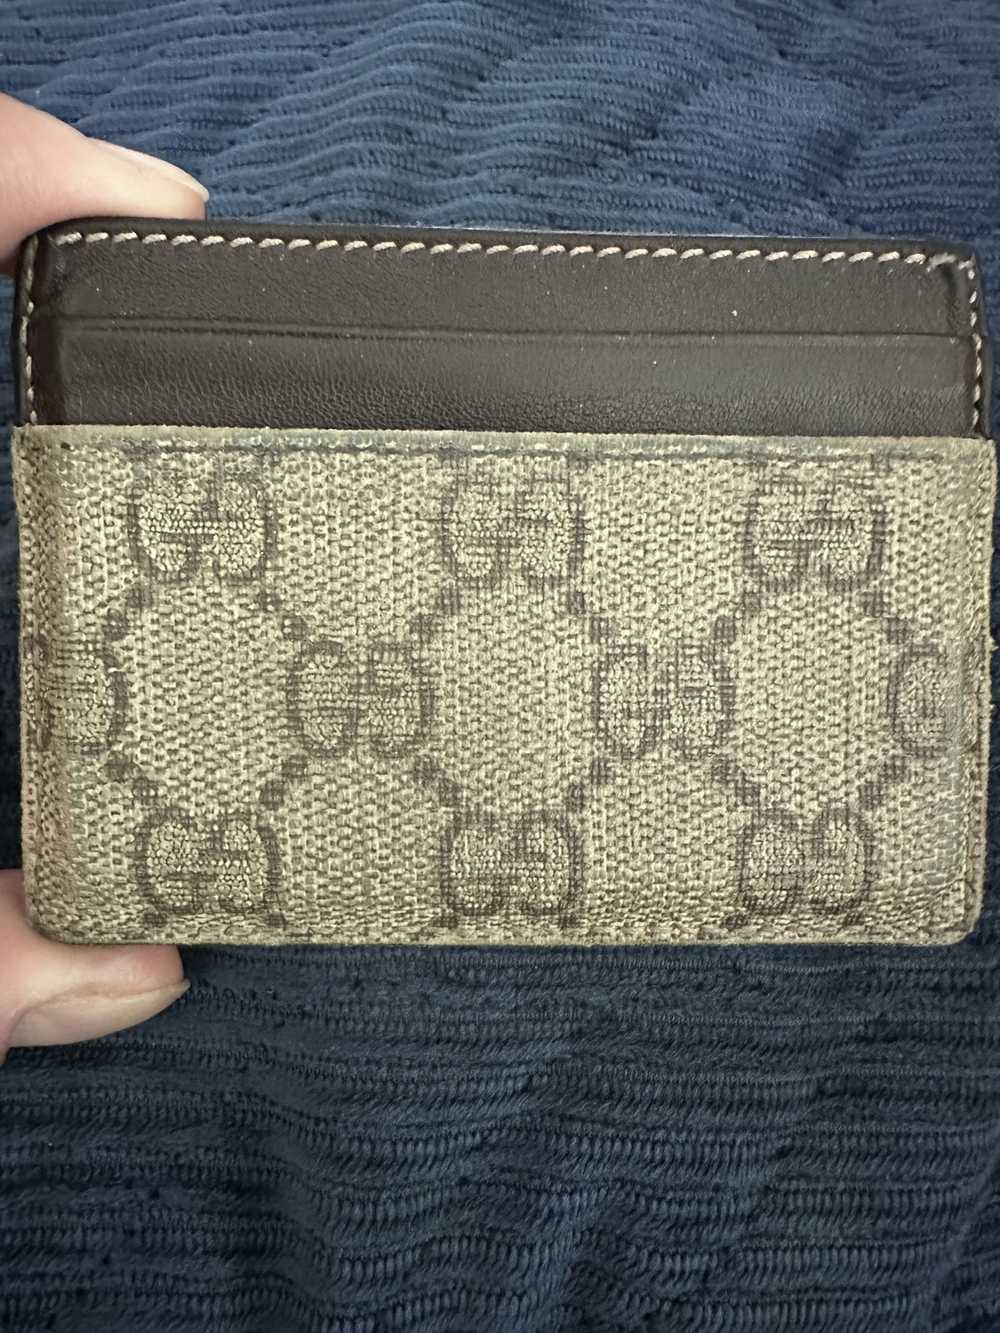 Gucci Gucci monogram GG card case - image 2